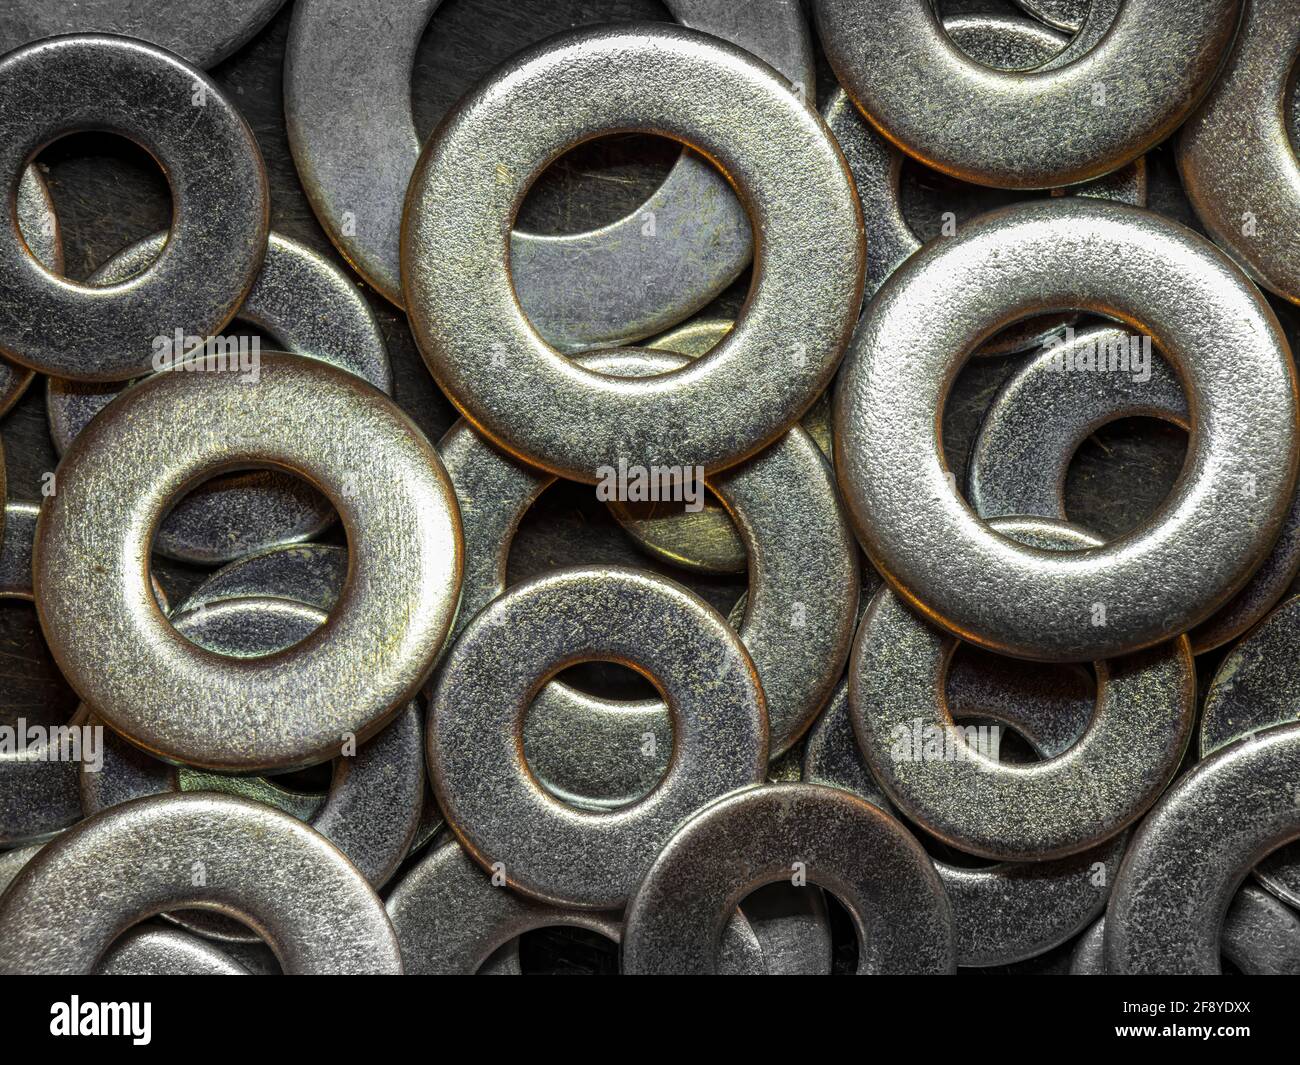 Primer plano de las arandelas metálicas Fotografía de stock - Alamy